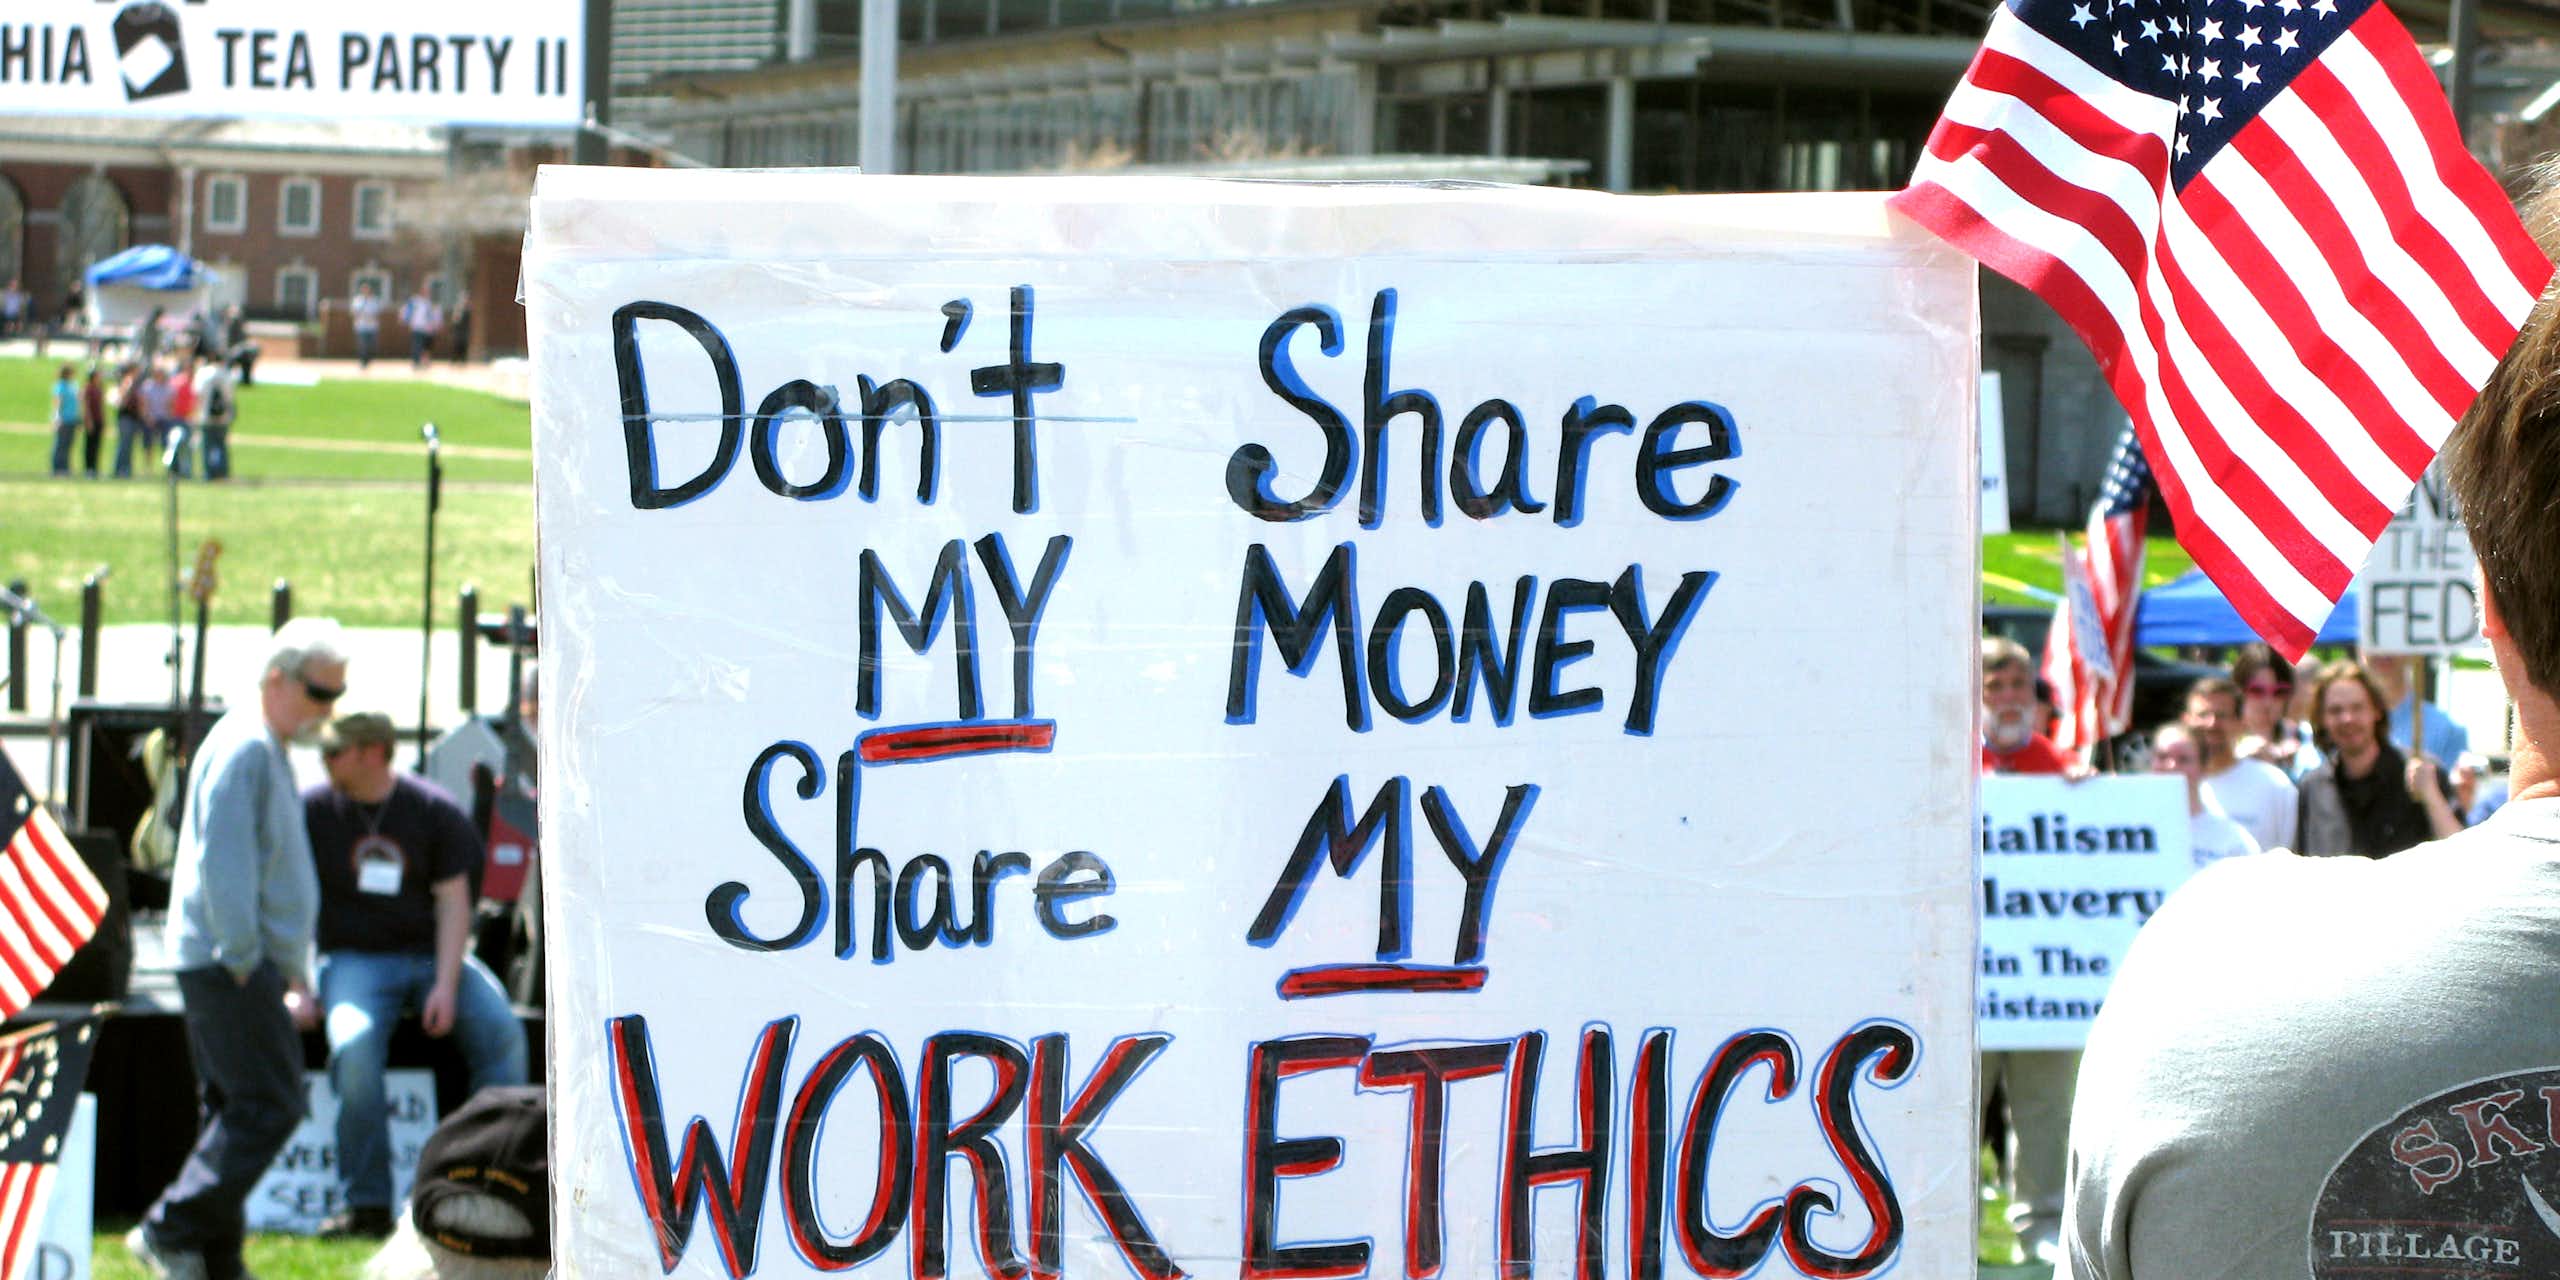 Lors d'une manifestation avec des drapeaux américains, on voit une pancarte proclamant « Don't share my money, share my work ethics ».